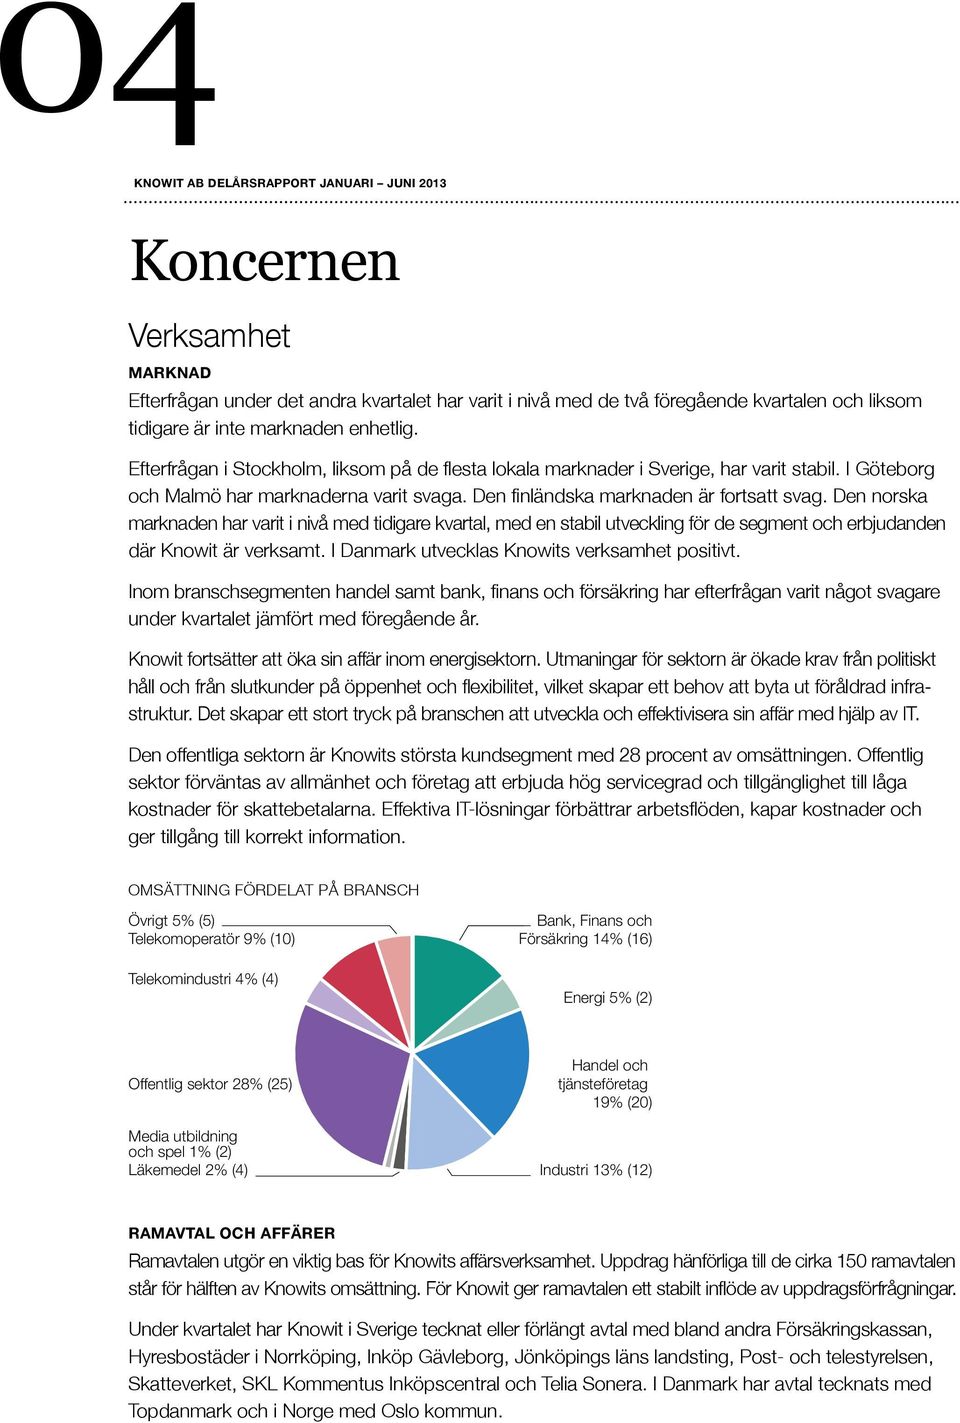 Den norska marknaden har varit i nivå med tidigare kvartal, med en stabil utveckling för de segment och erbjudanden där Knowit är verksamt. I Danmark utvecklas Knowits verksamhet positivt.